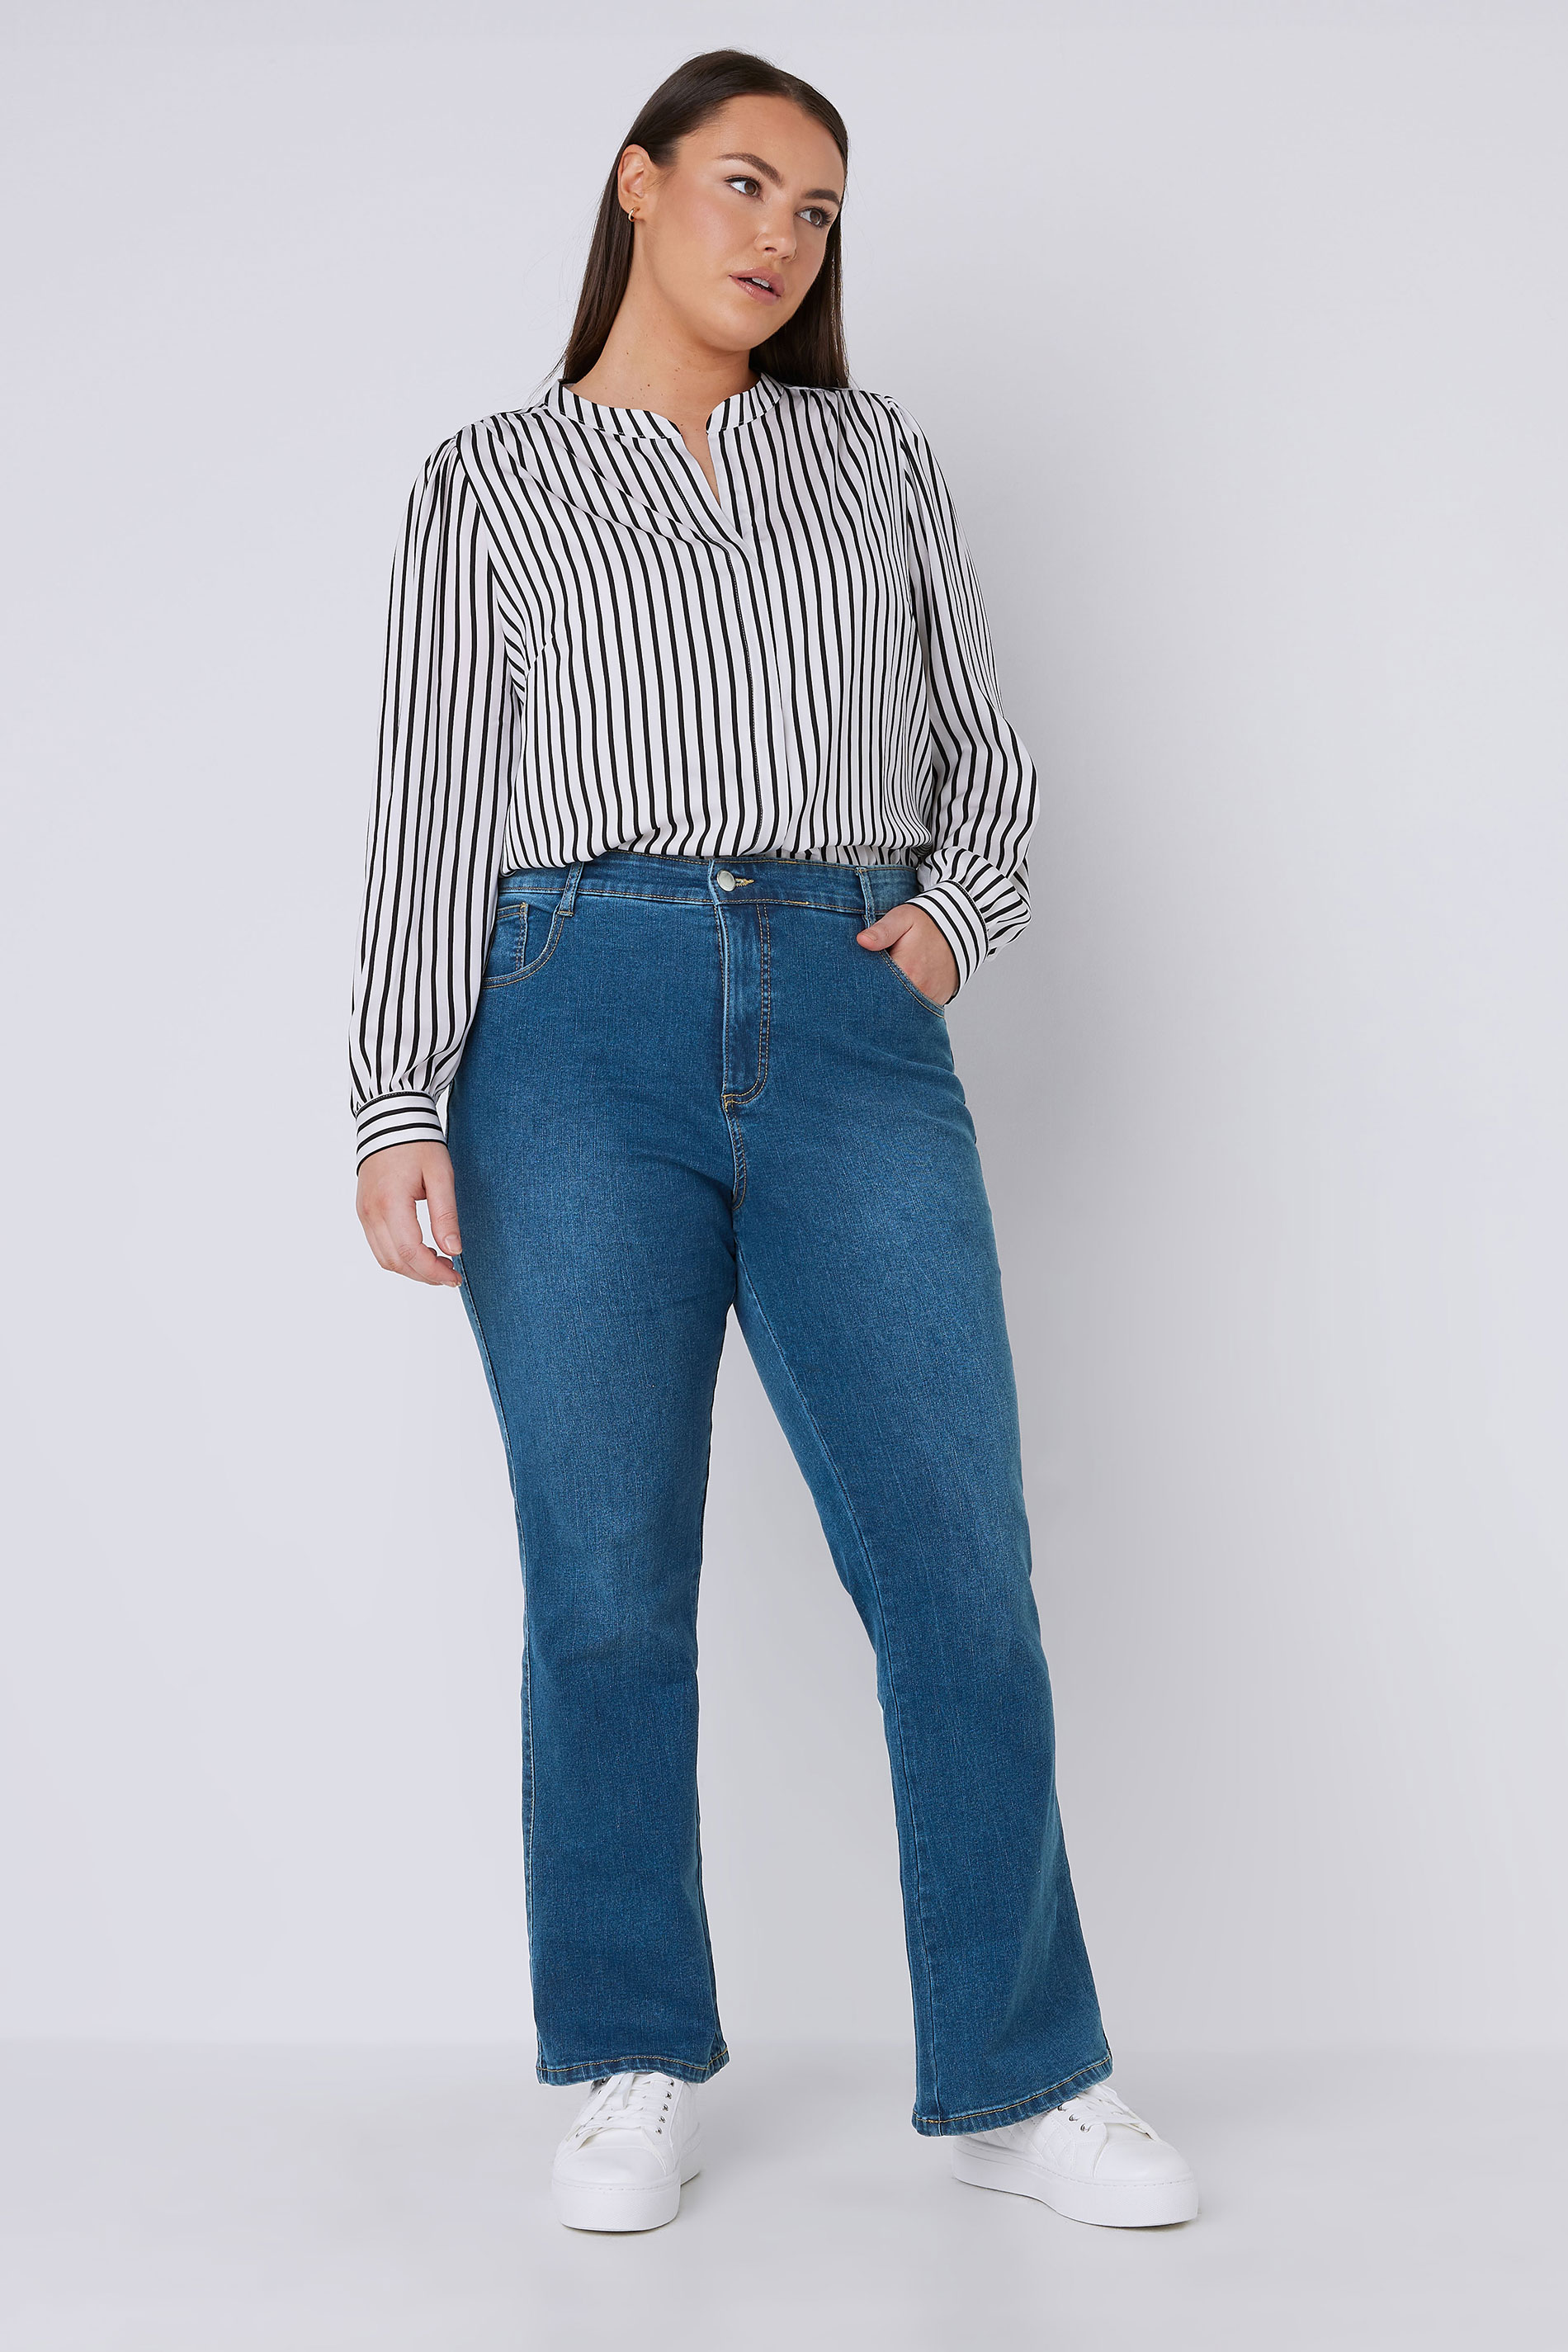 EVANS Plus Size Curve Fit Blue Mid Wash Bootcut Jeans | Evans 2